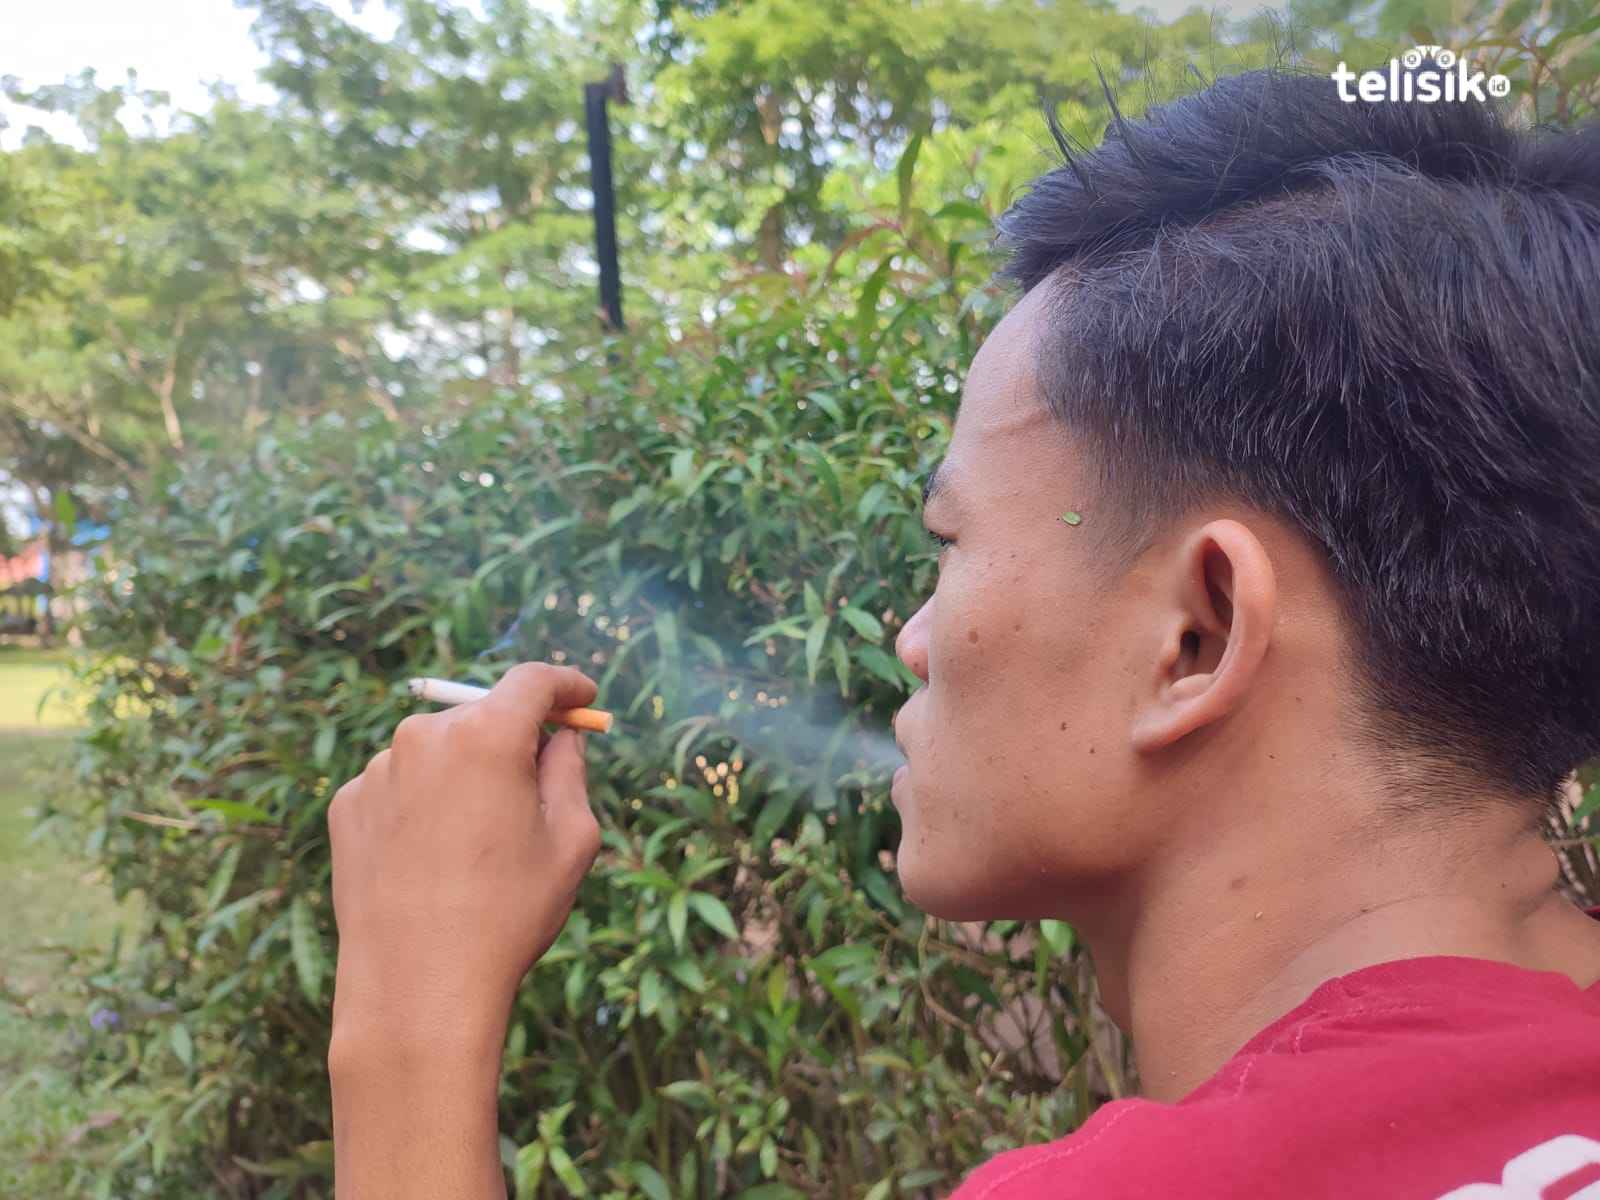 Pedagang dan Konsumen di Kendari Ketar-Ketir Soal Wacana Larangan Jual Rokok Batangan